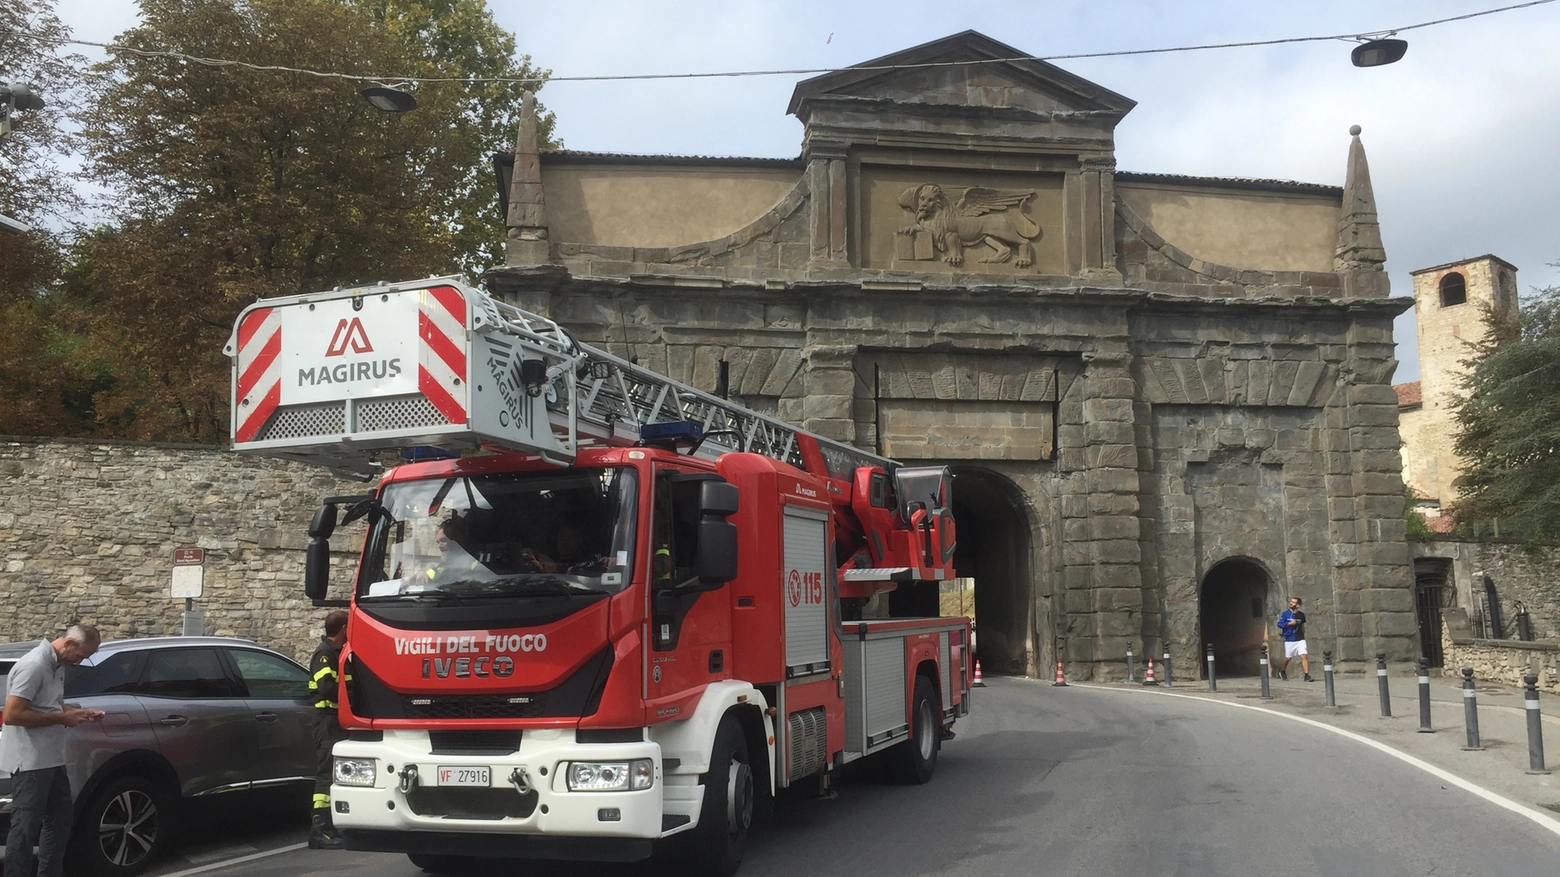 Un camion ha urtato porta Sant’Agostino, a Bergamo